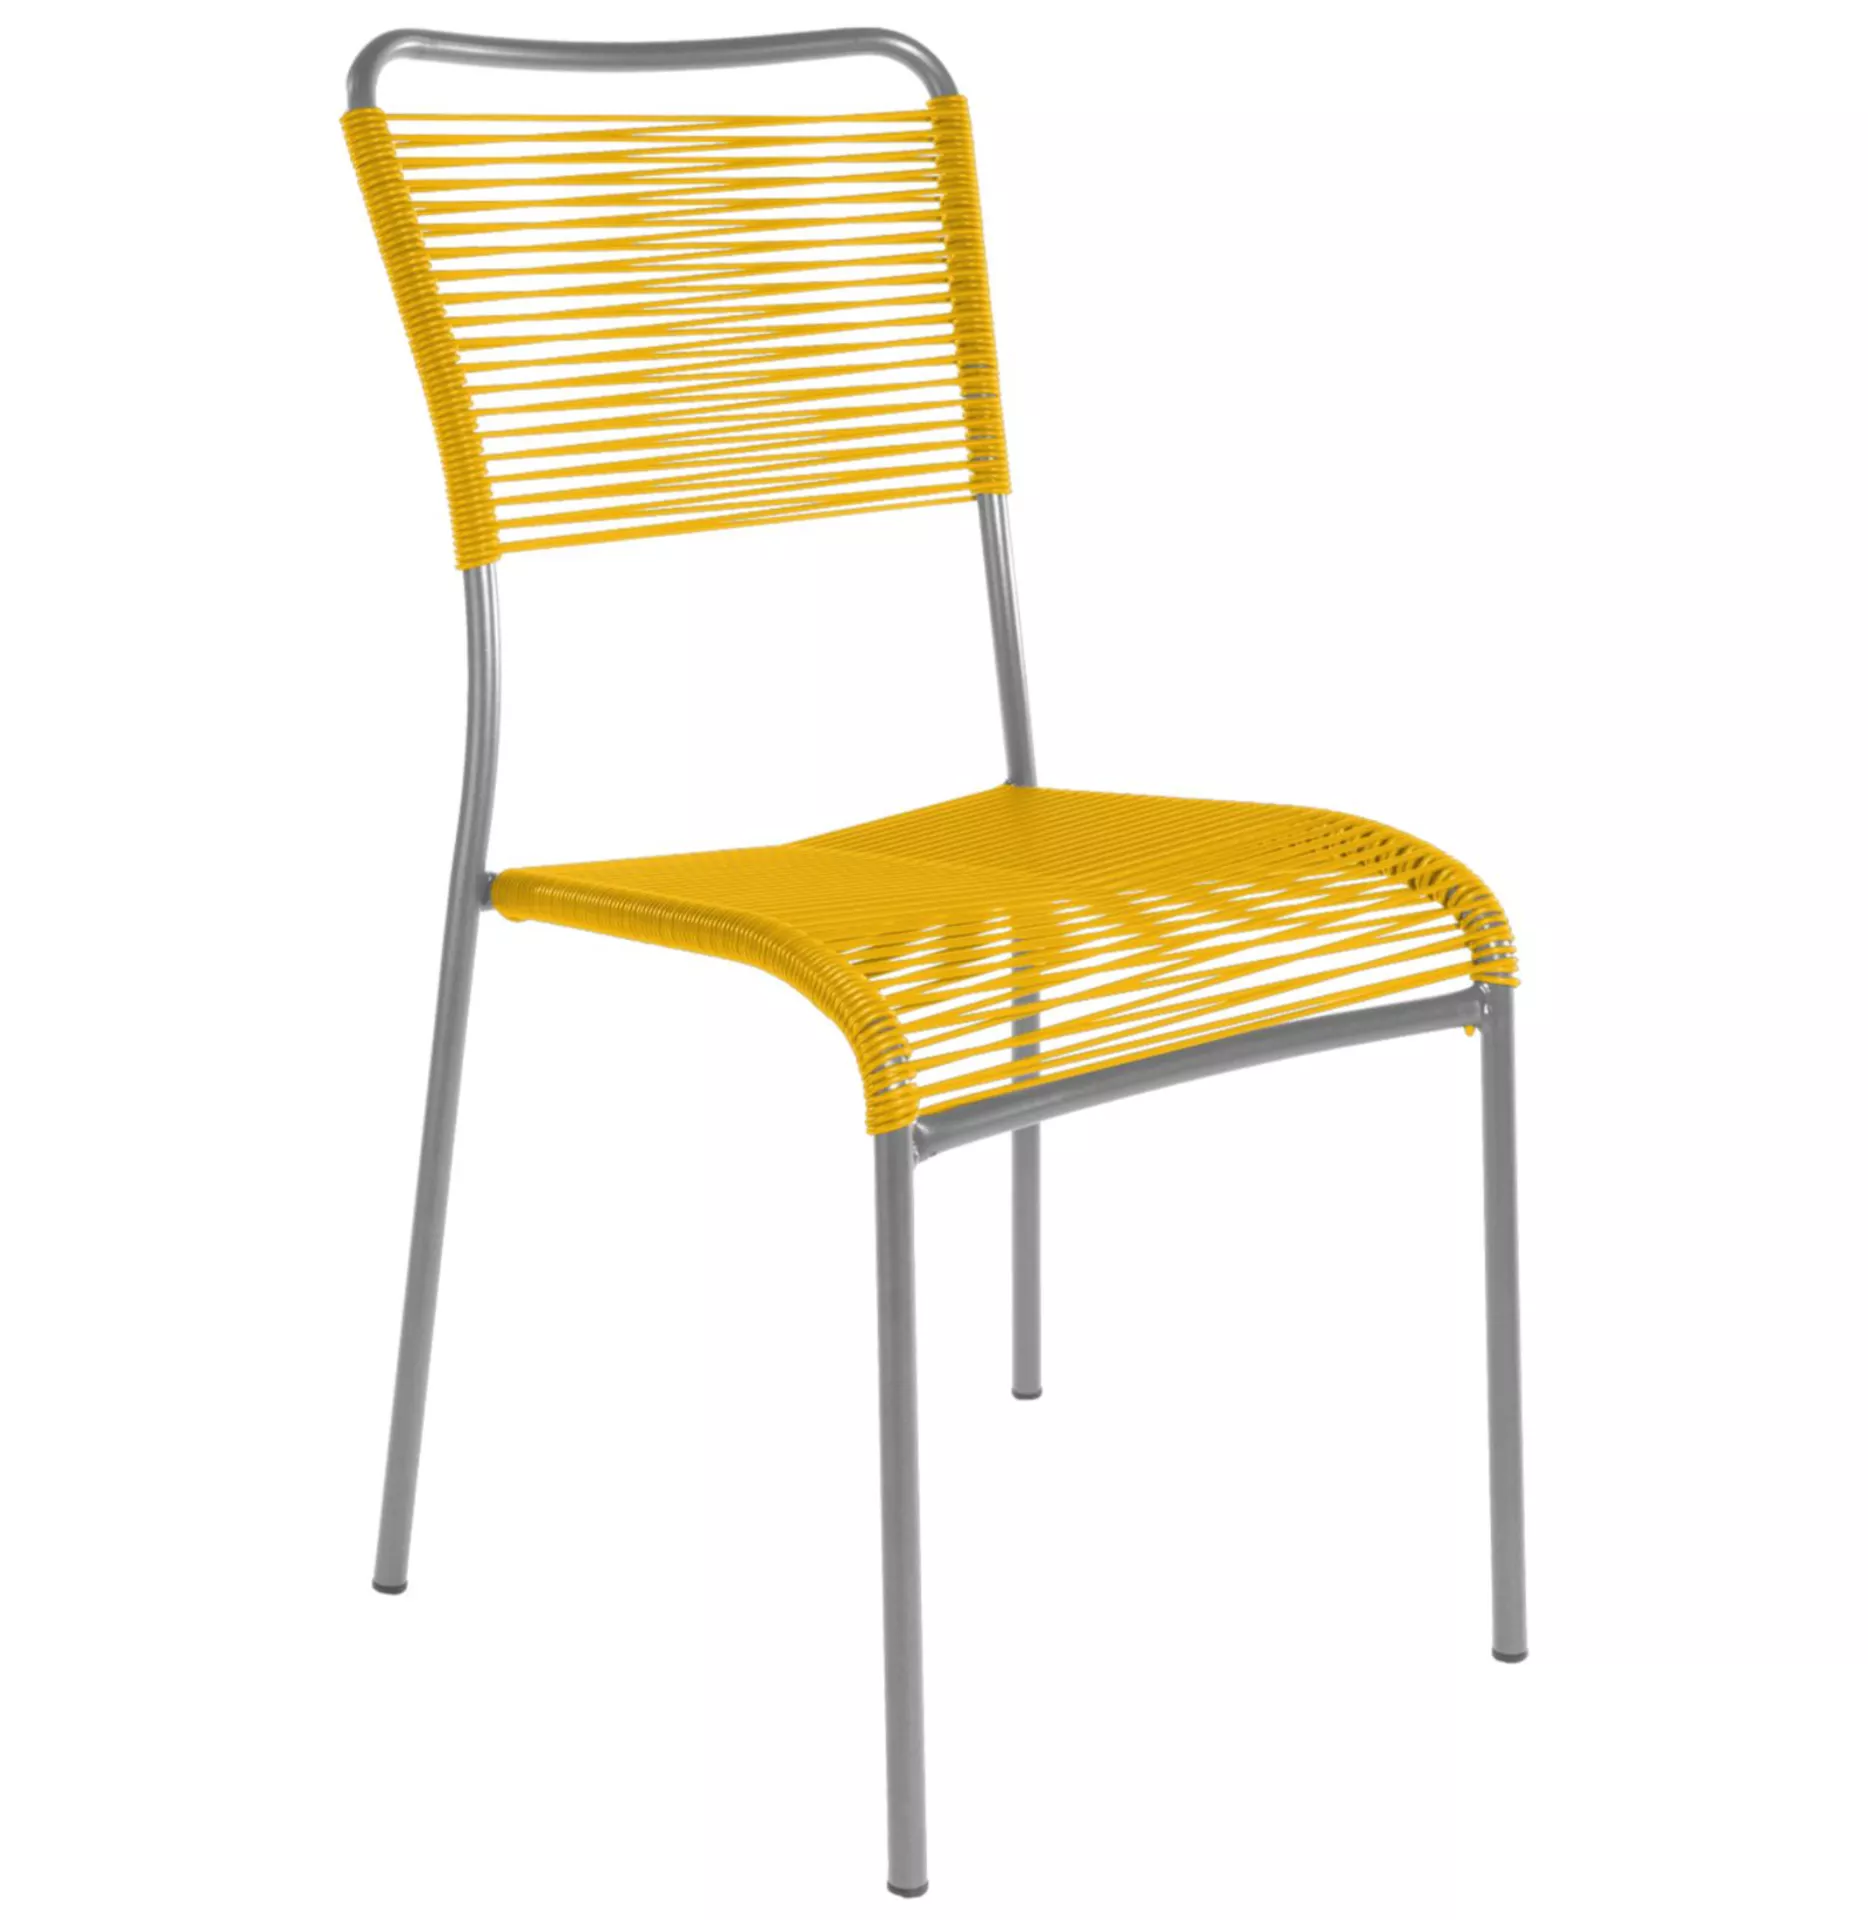 Spaghetti-Stuhl Mendrisio Schaffner / Farbe: Gelb